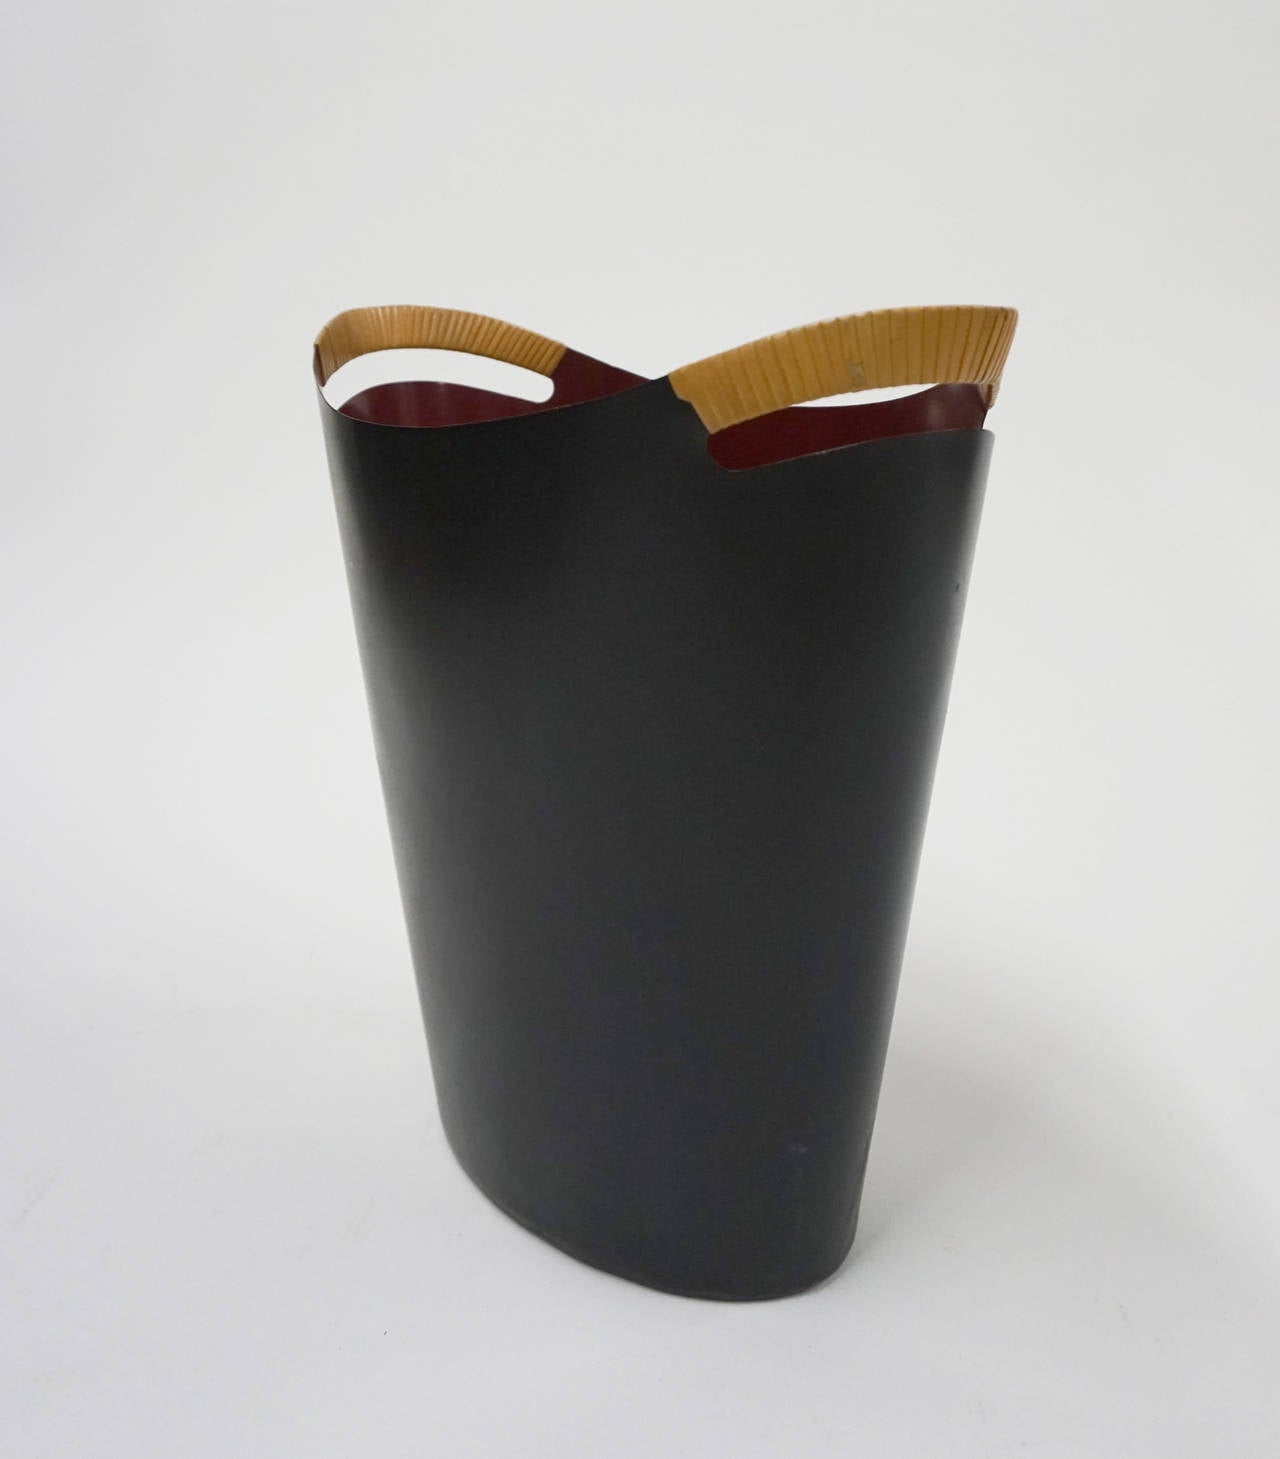 Enameled metal wastepaper basket with cane wrapped handles by Grethe Bang for Torben Ørskov & Co. Black enamel exterior and dark red interior.